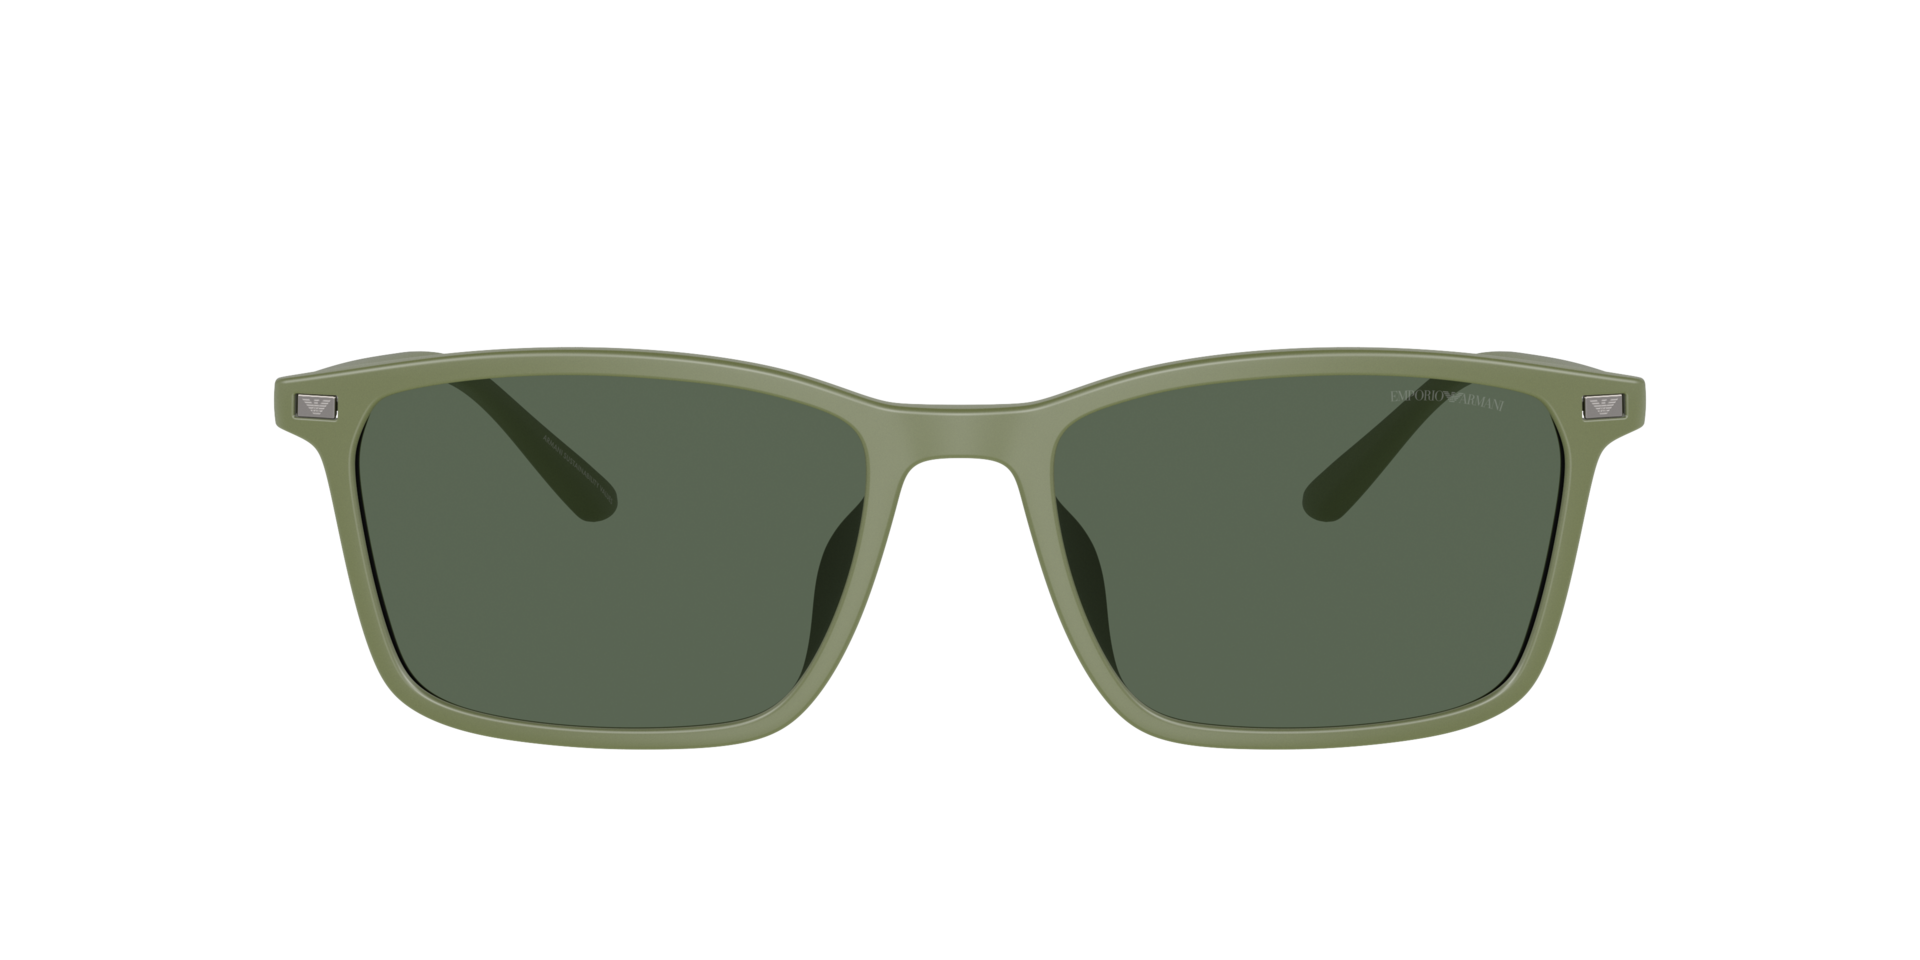 Das Bild zeigt die Sonnenbrille EA4223 542471 von der Marke Emporio Armani in grün.